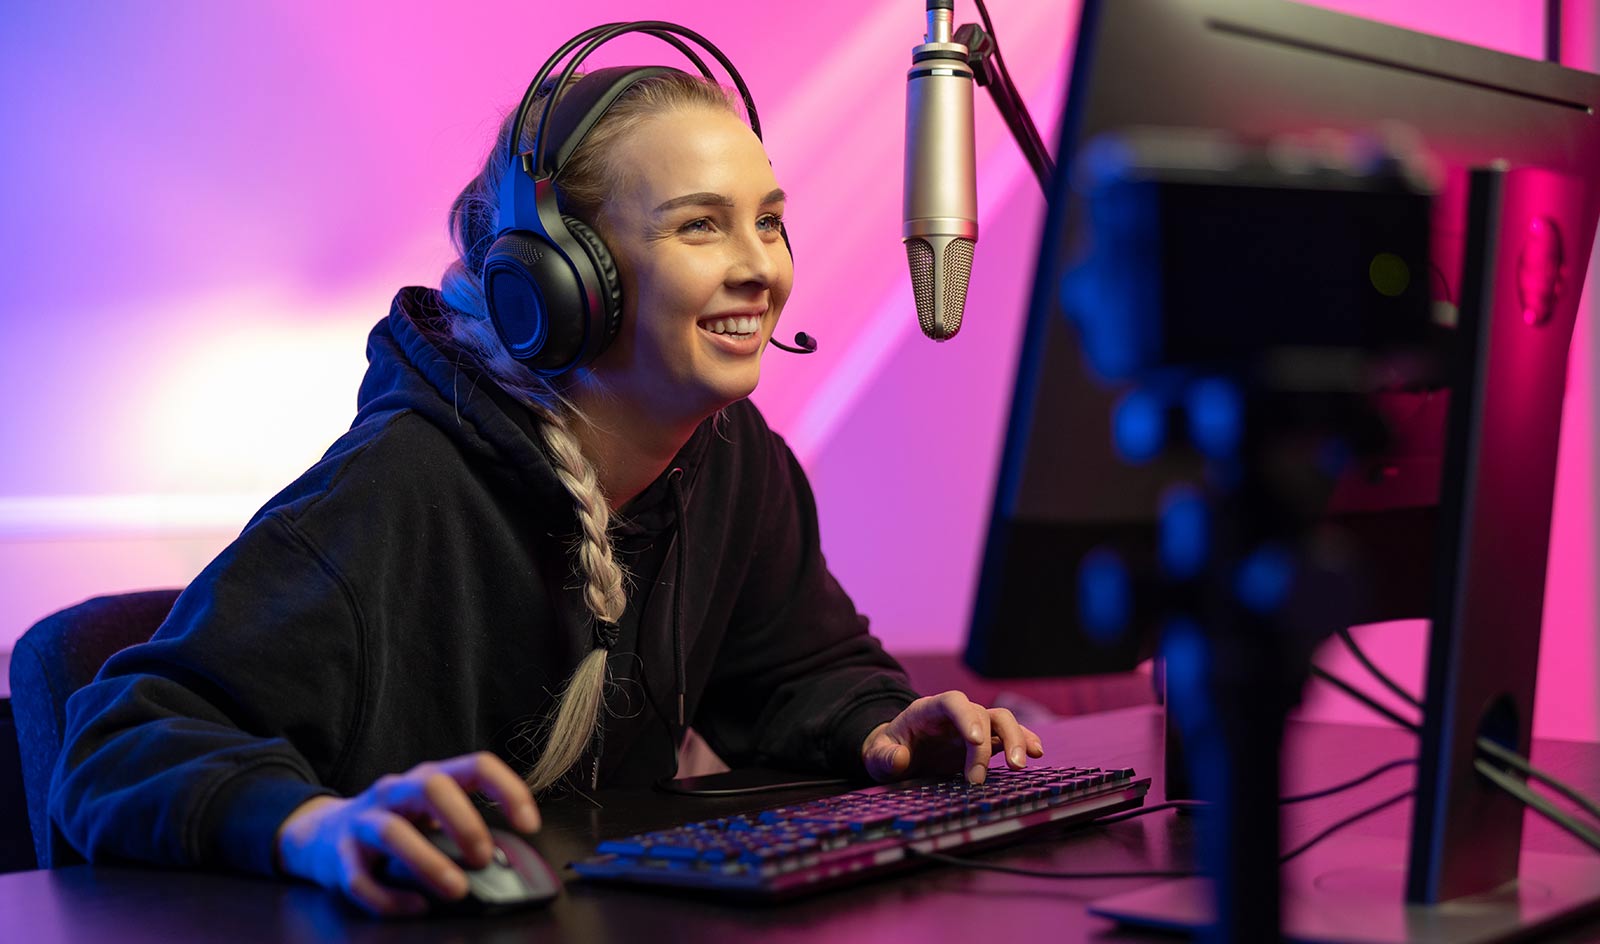 Smiling femme gamer at computer